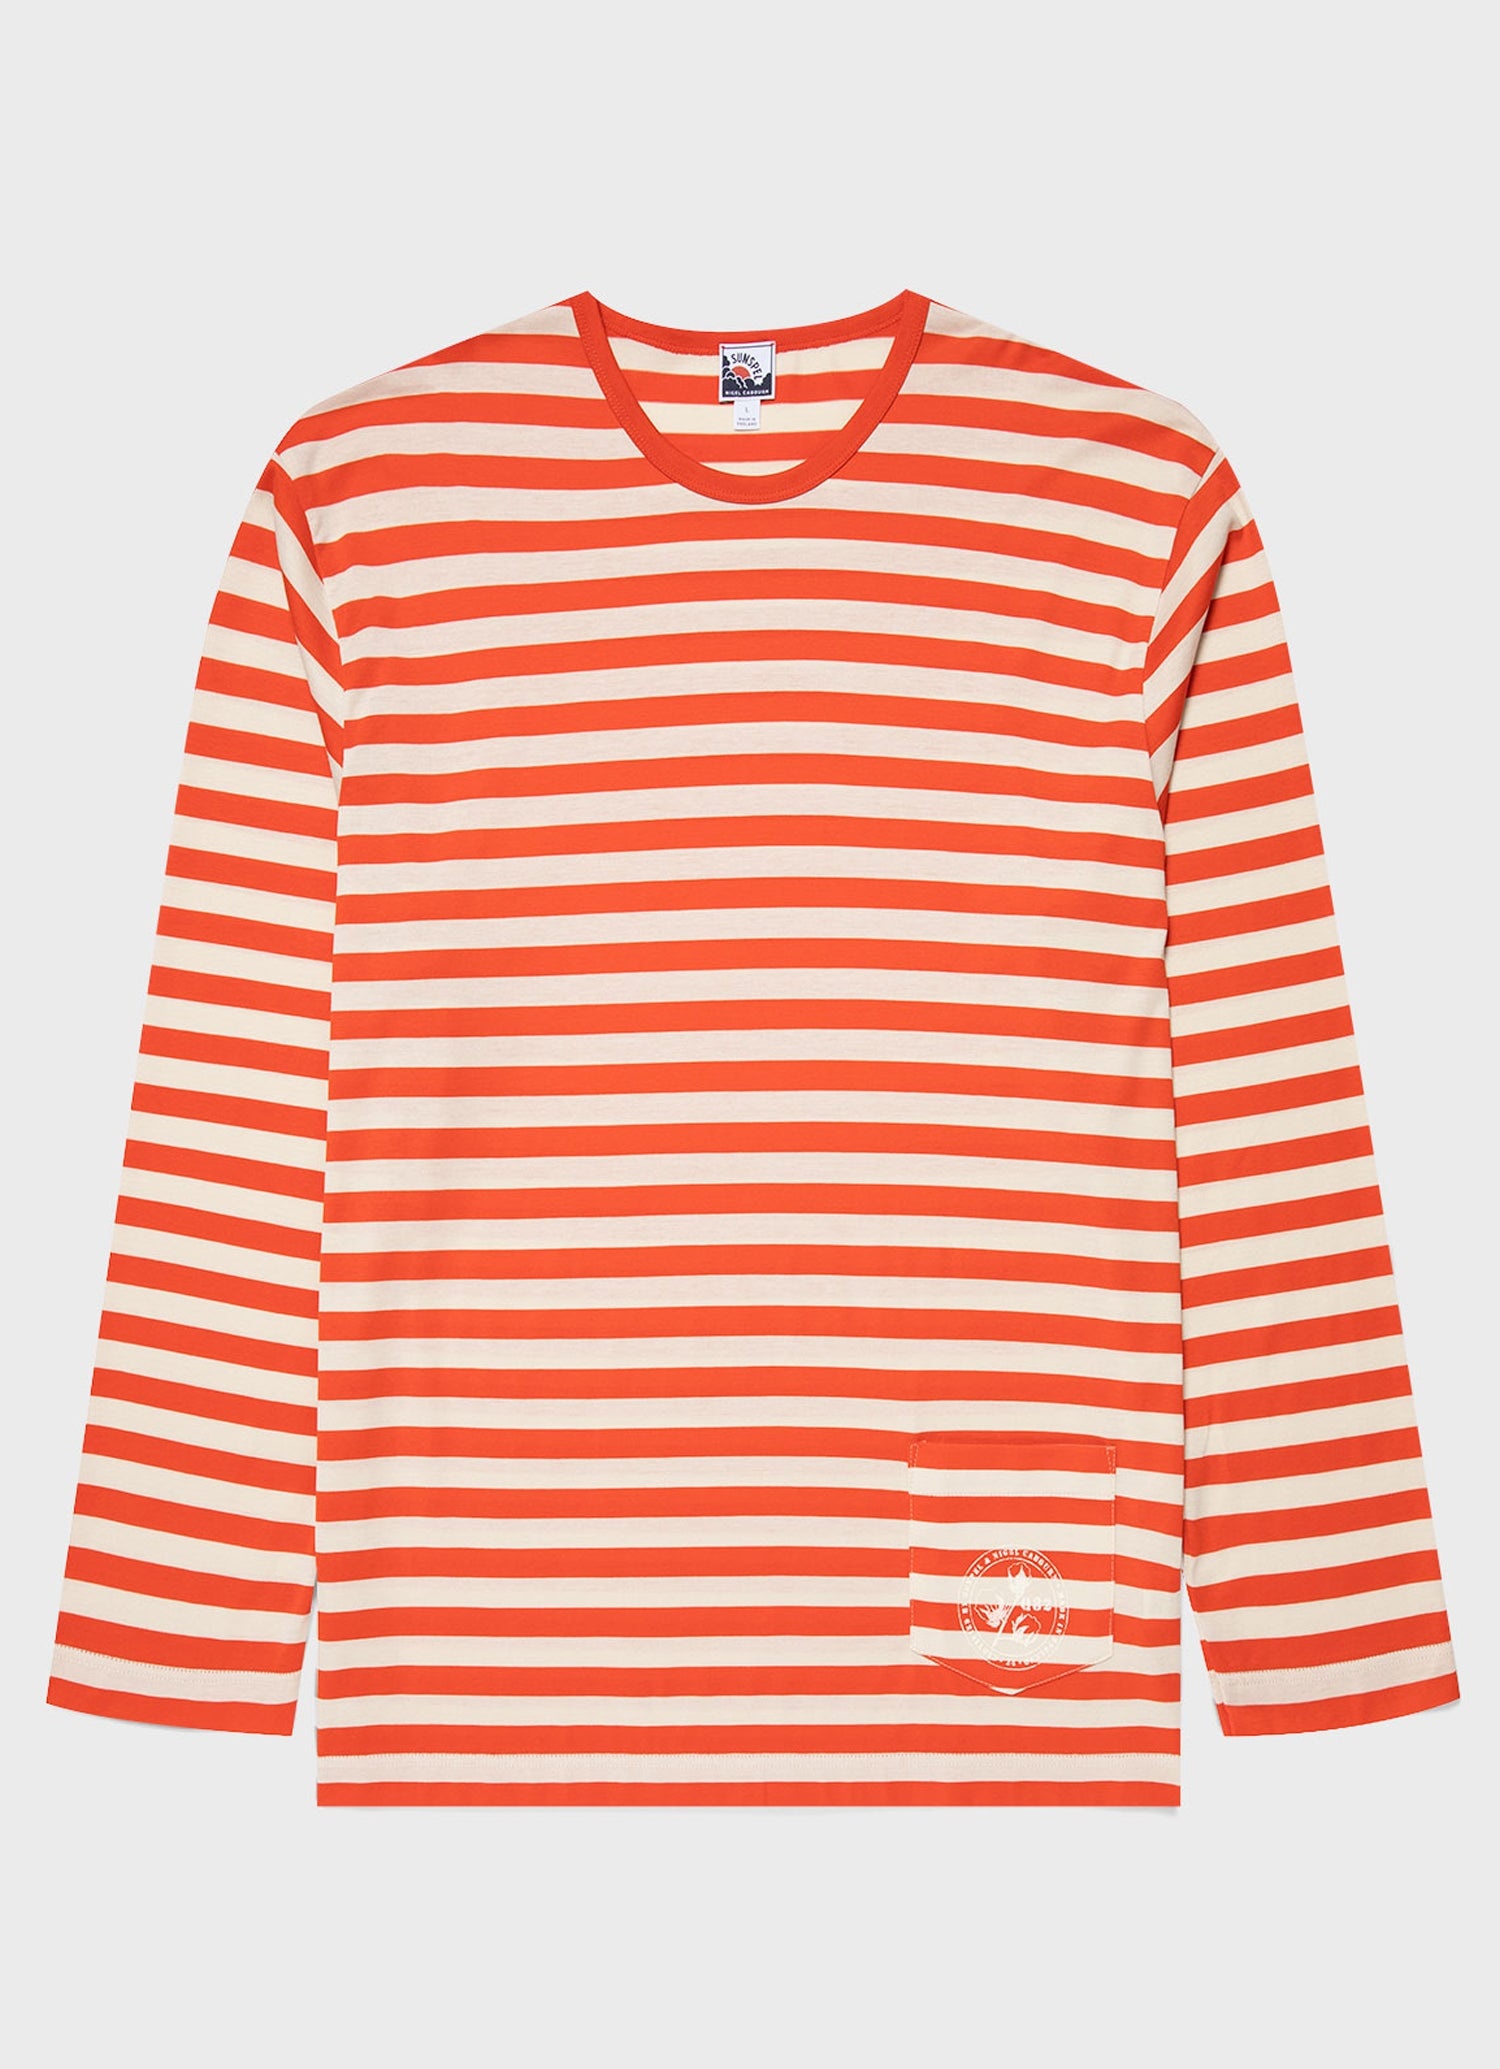 Nigel Cabourn x Sunspel Long Sleeve Pocket T-Shirt in Orange/Stone Stripe - 1